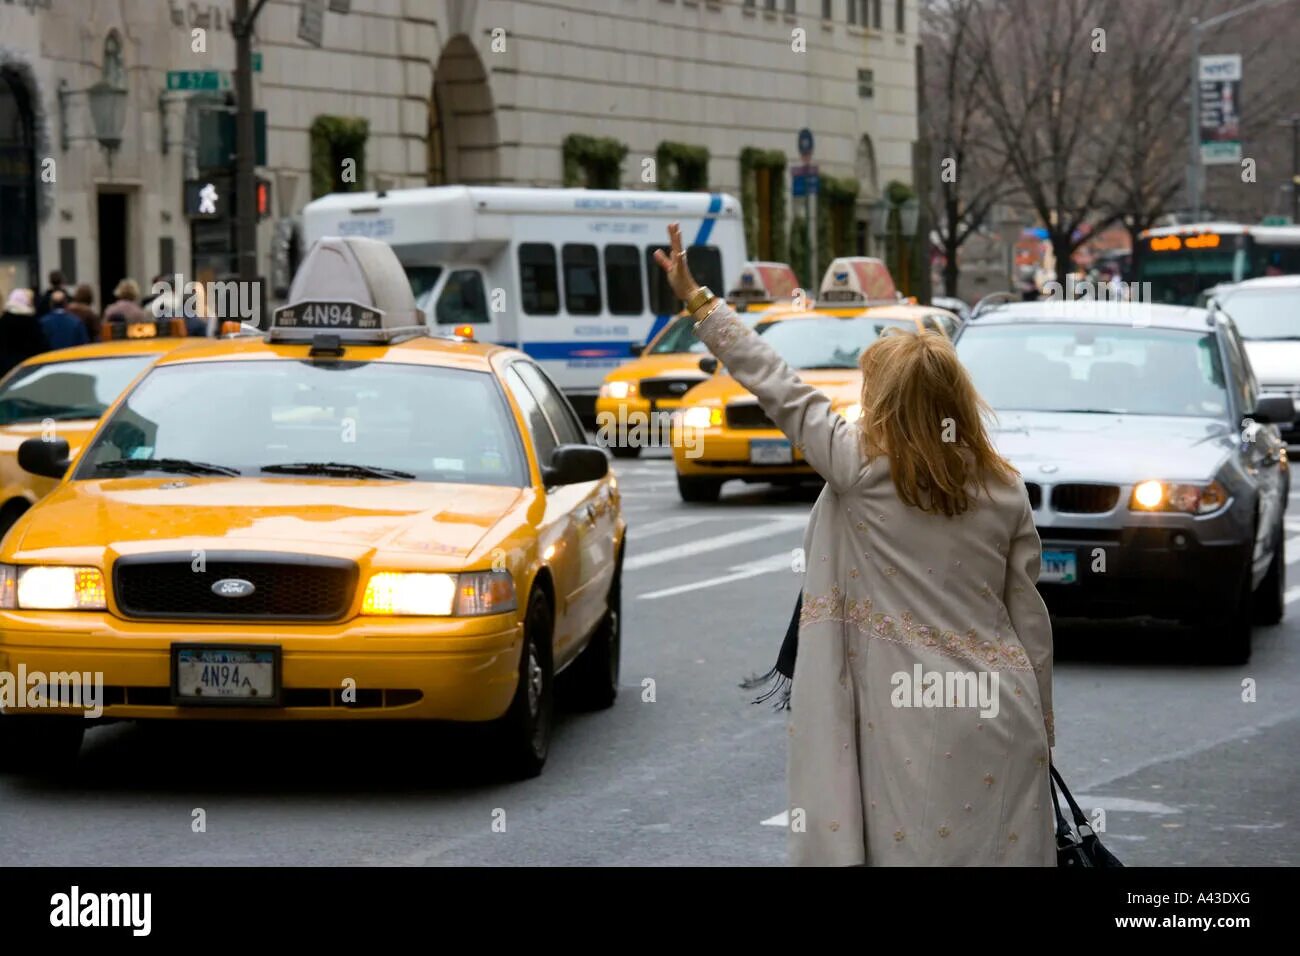 Такси колл. Флаг такси. Такси девушка Лондон. Картинка такси с девушкой. Женщина провожает такси.